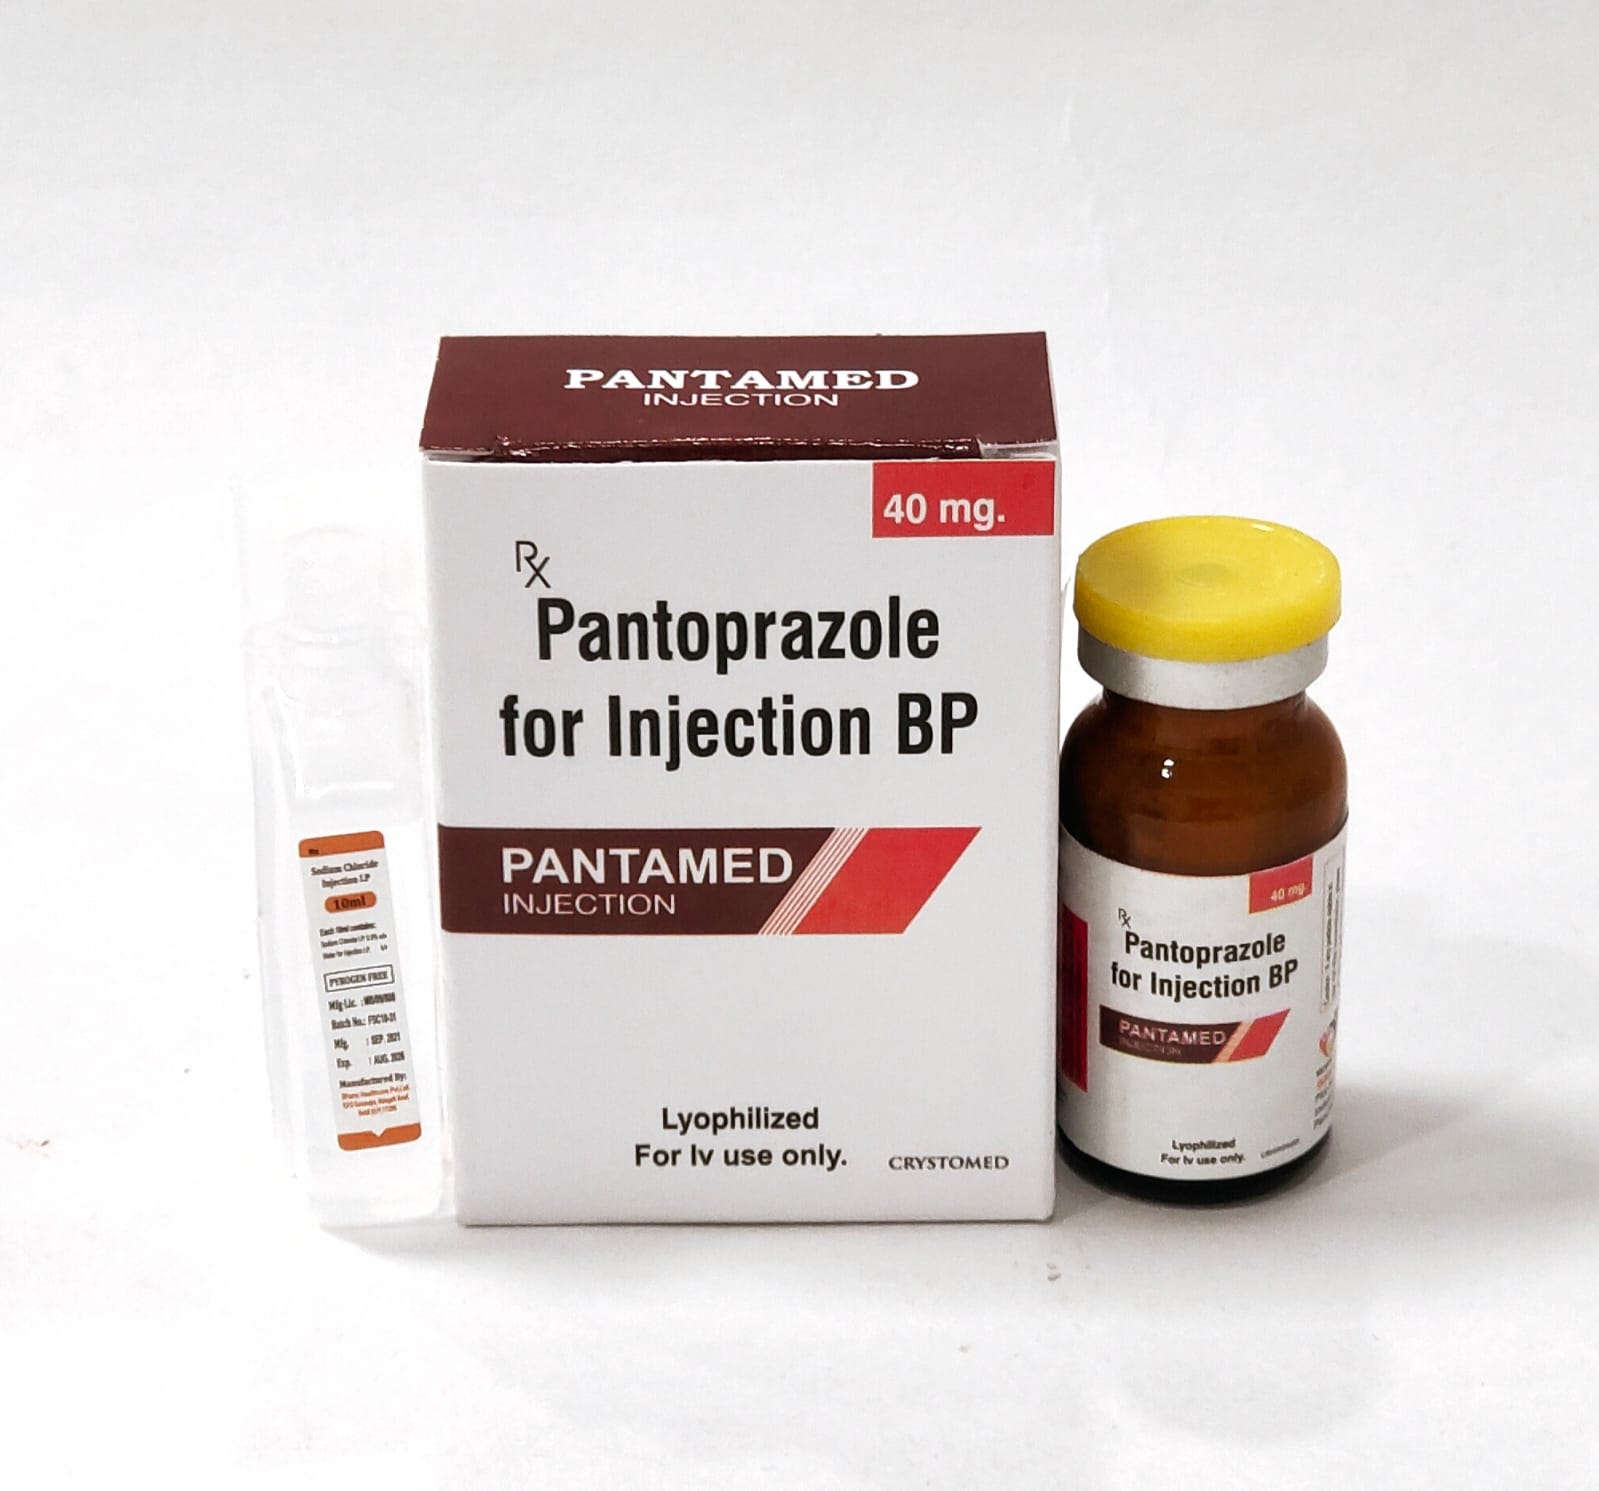 Pantoprazole for Injection BP